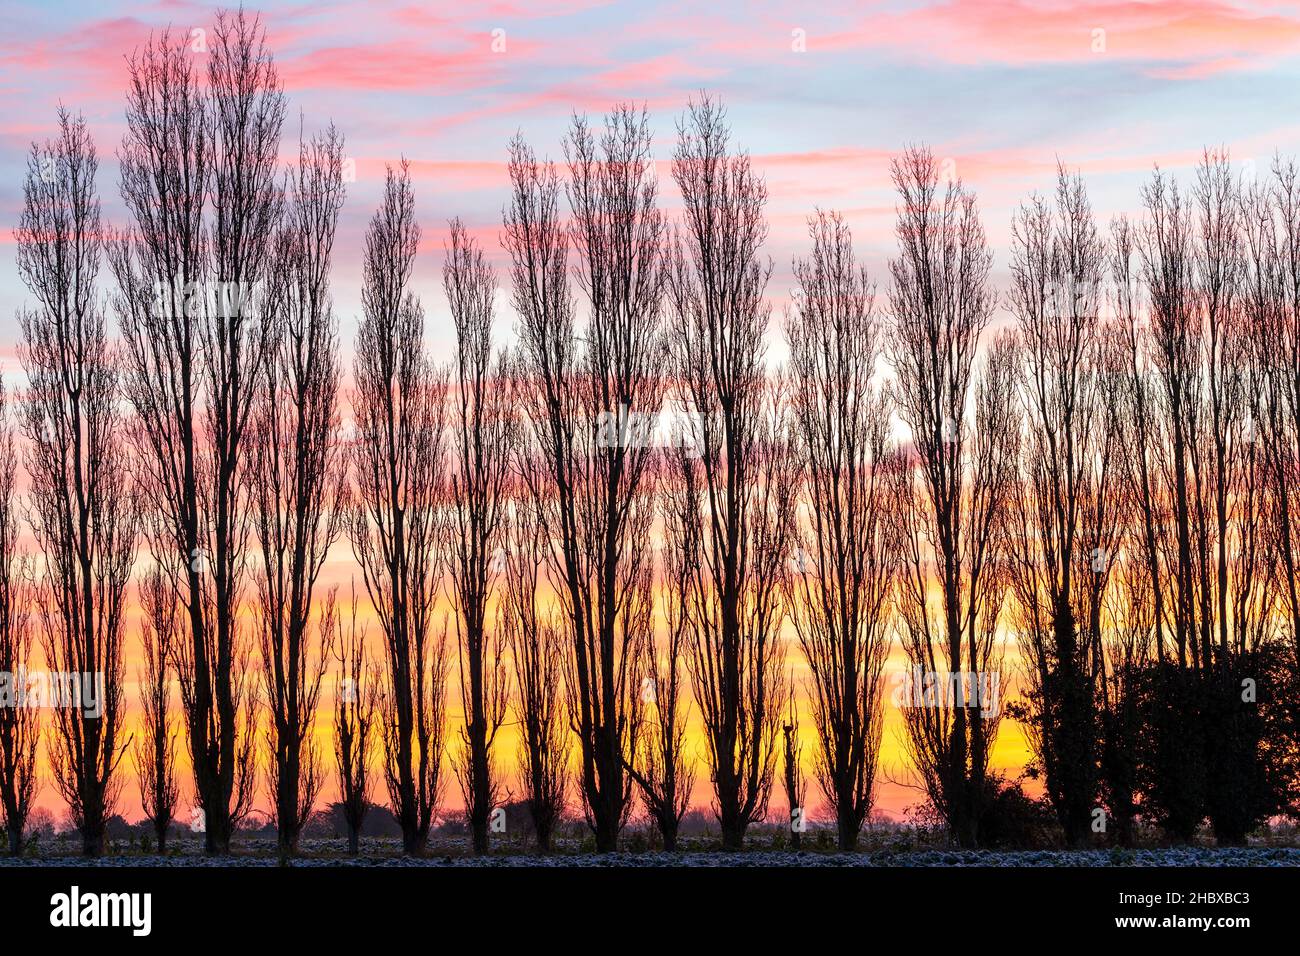 L'alba cielo su un campo coperto di gelo con una linea di alberi di pioppo  all'orizzonte. Cielo perlopiù chiaro con alcune macchie di tipo cirrus  nuvole. Campagna del Kent in Inghilterra. Inverno